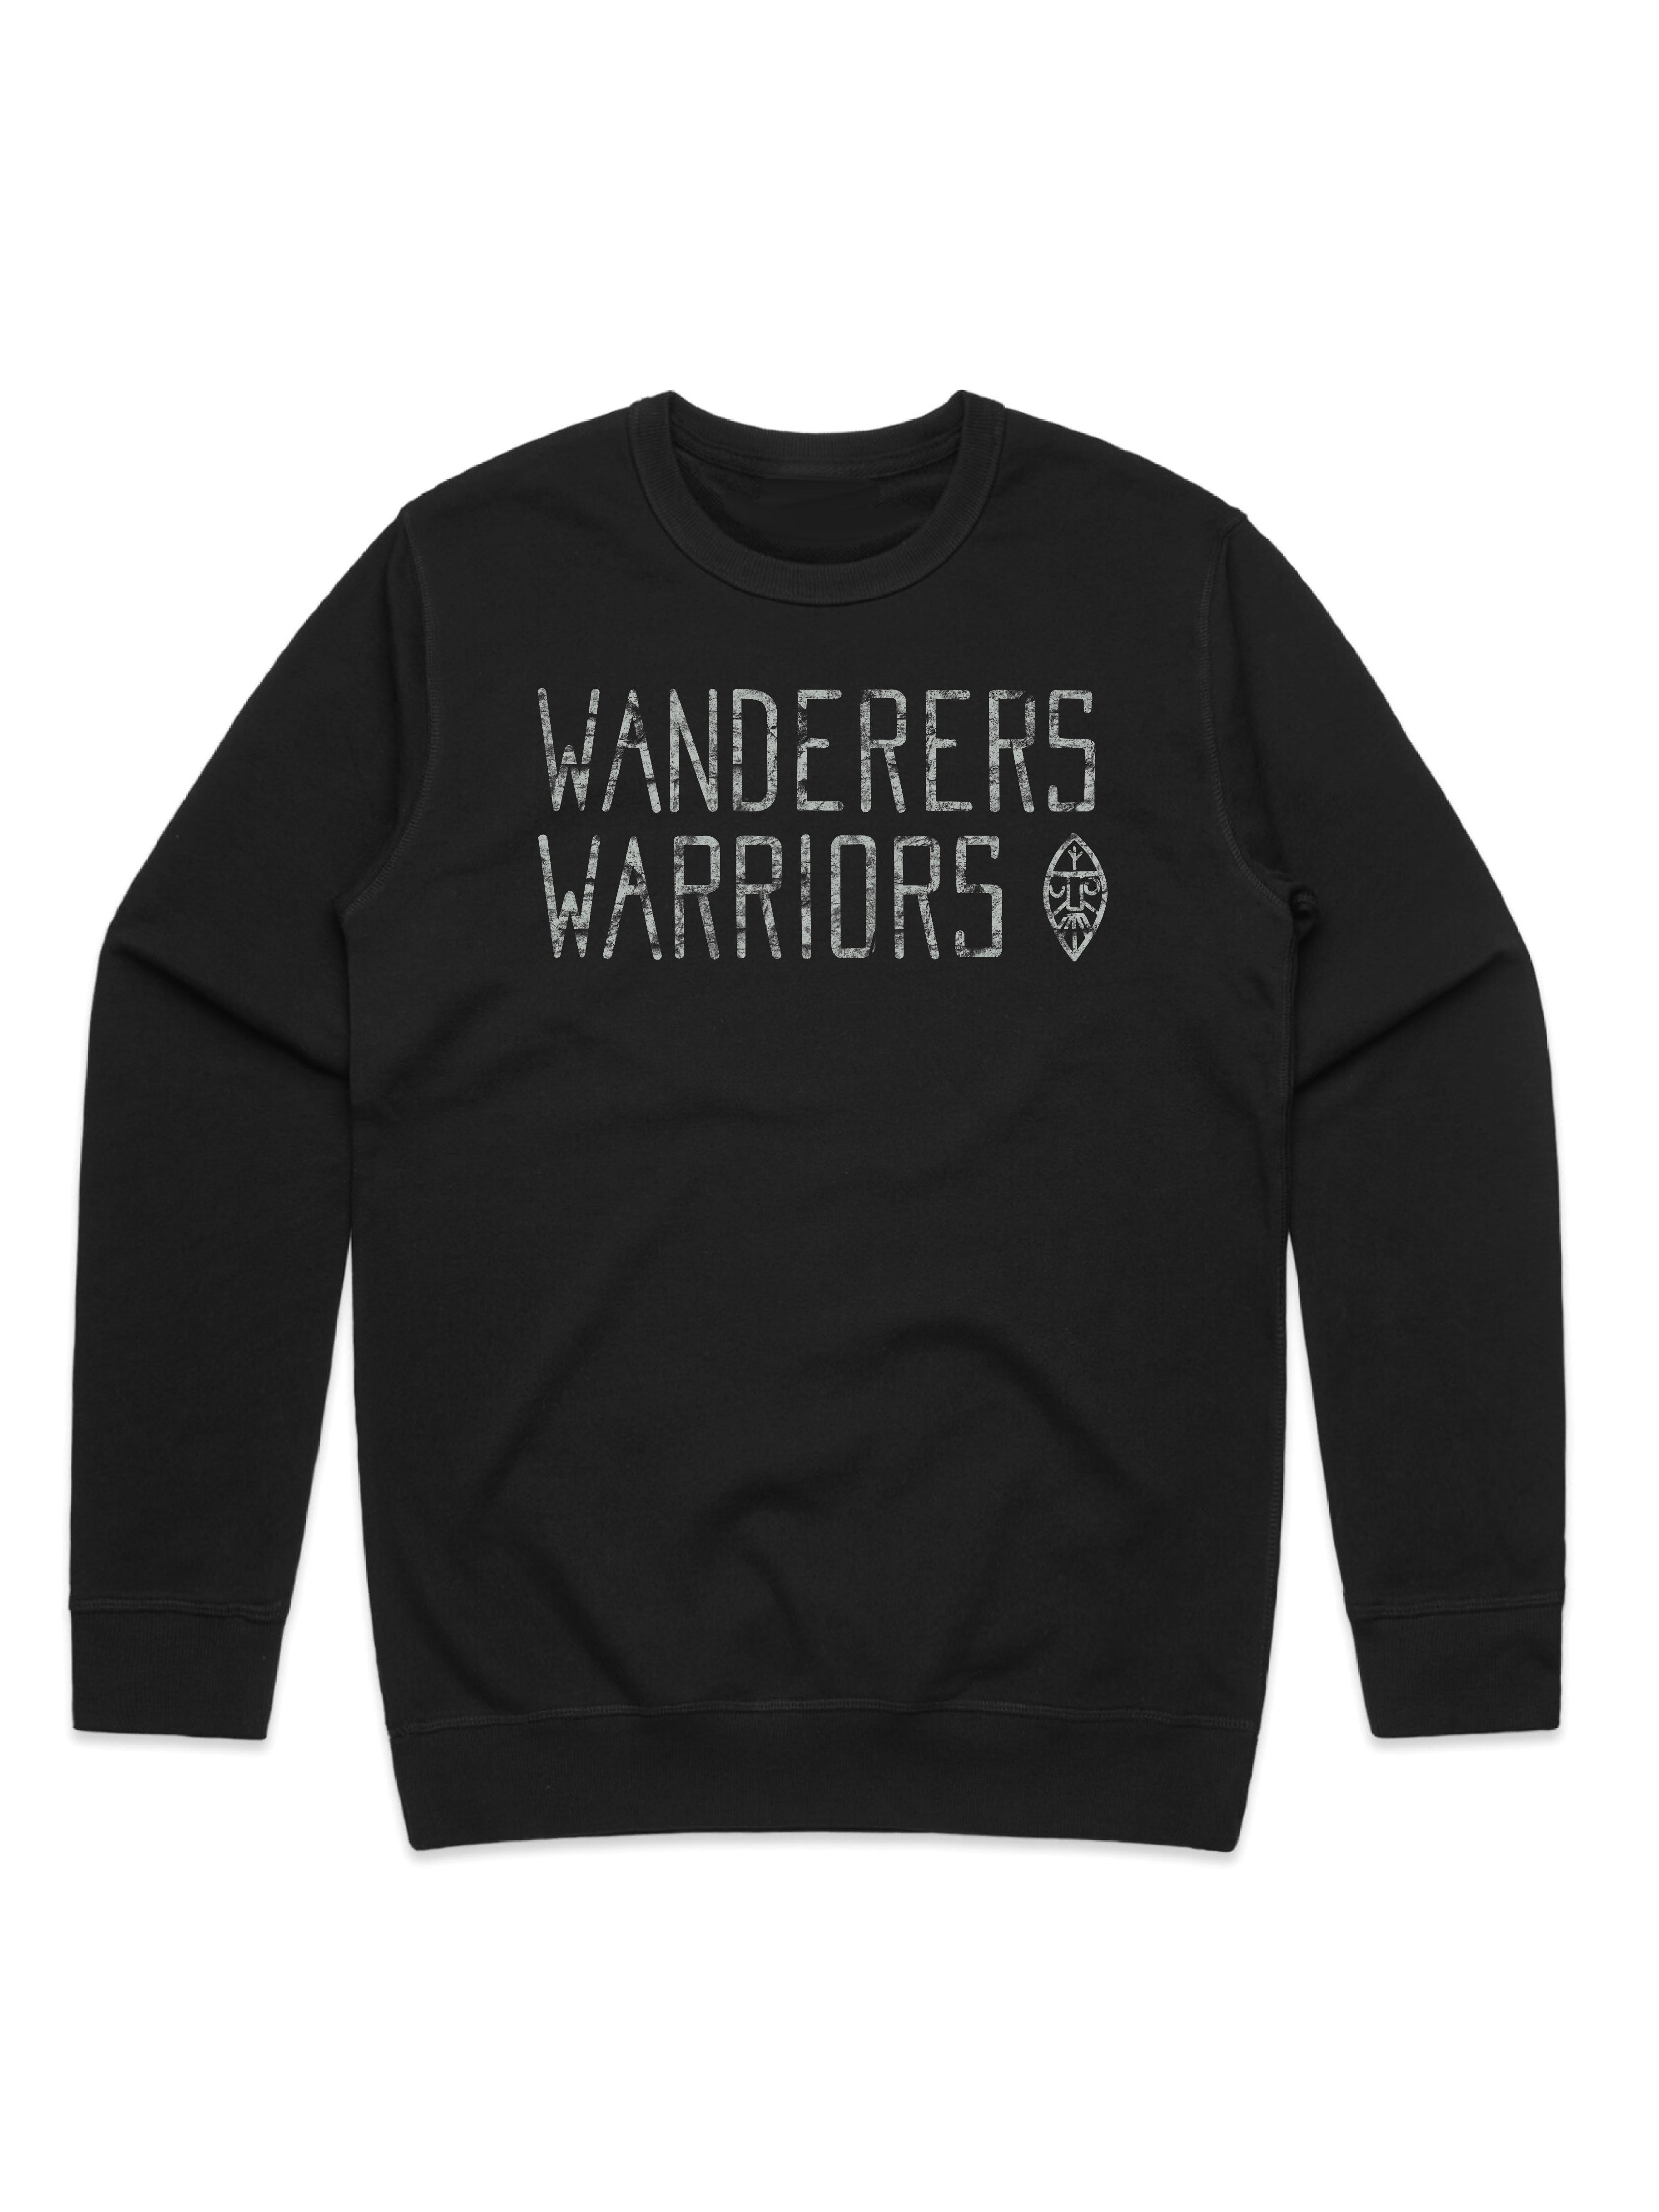 Herra: Wanderers & Warriors